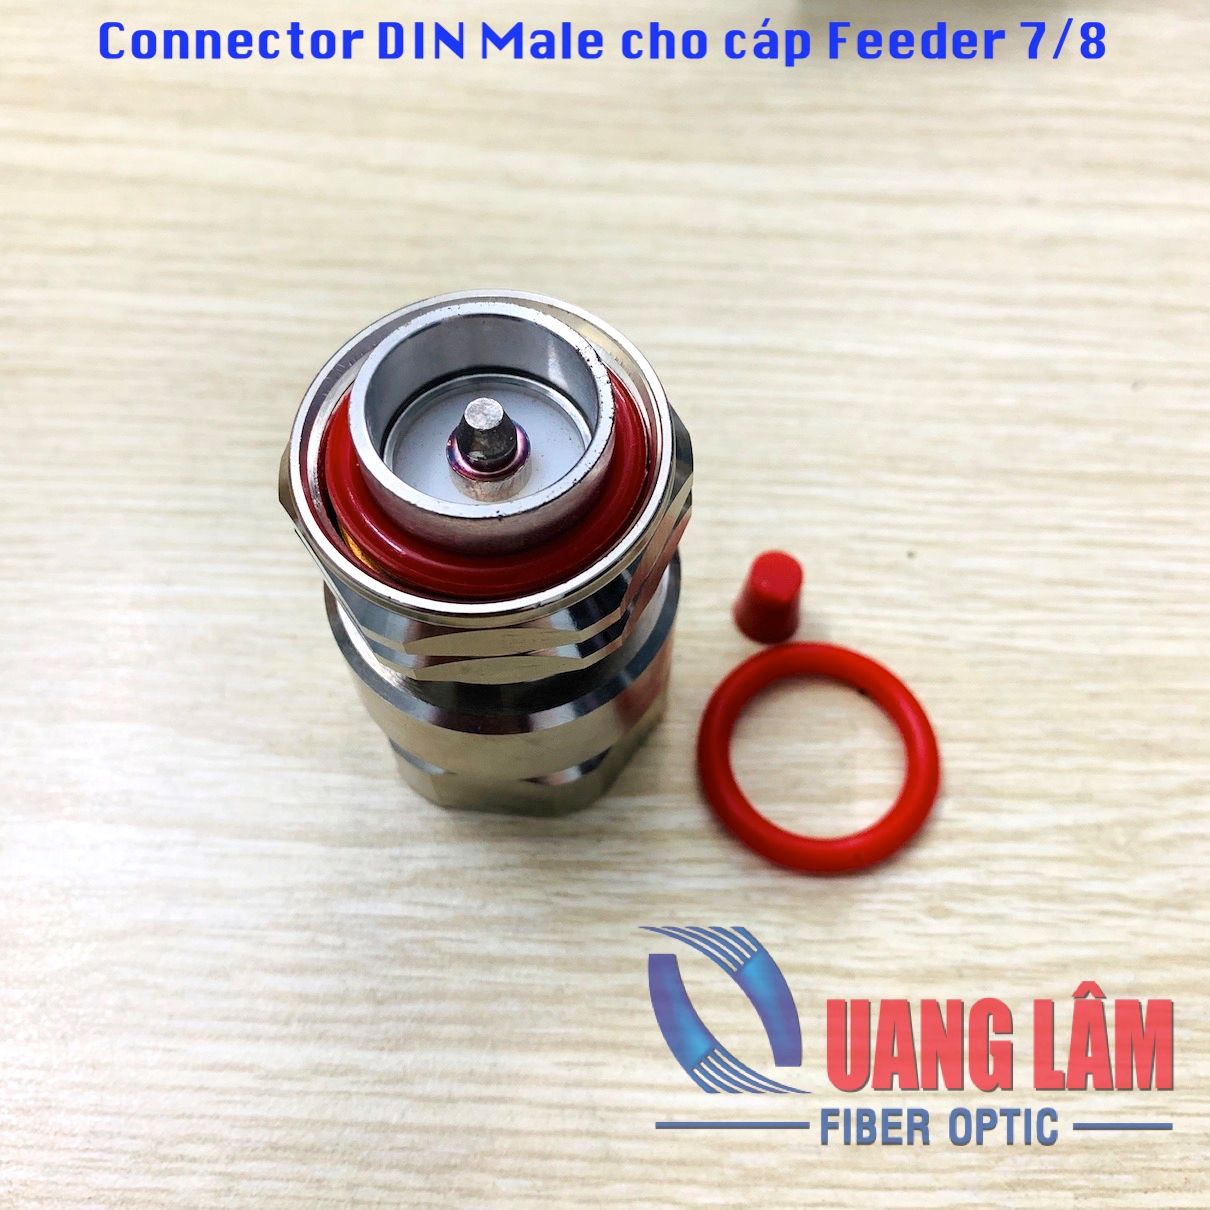 Connector DIN Male cho cáp Feeder 7/8